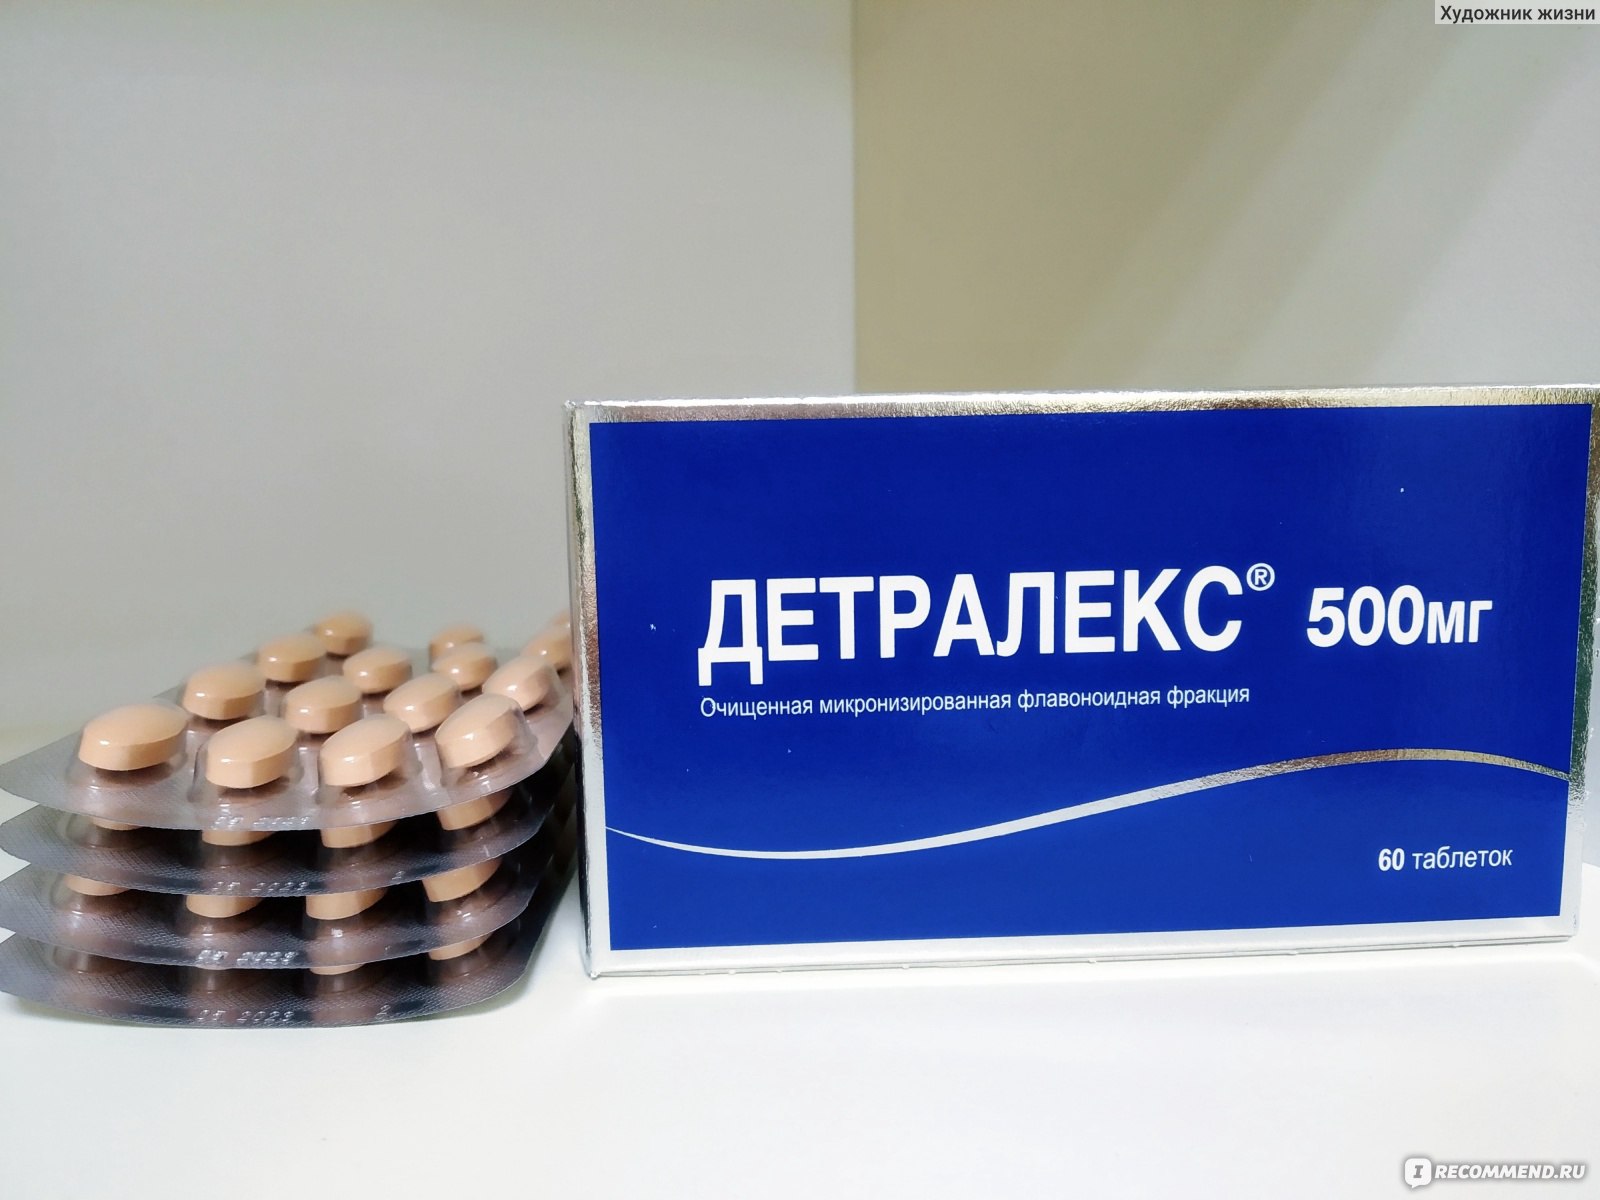 Лекарственный препарат ООО " Сердикс " Россия Детралекс 500 мг фото